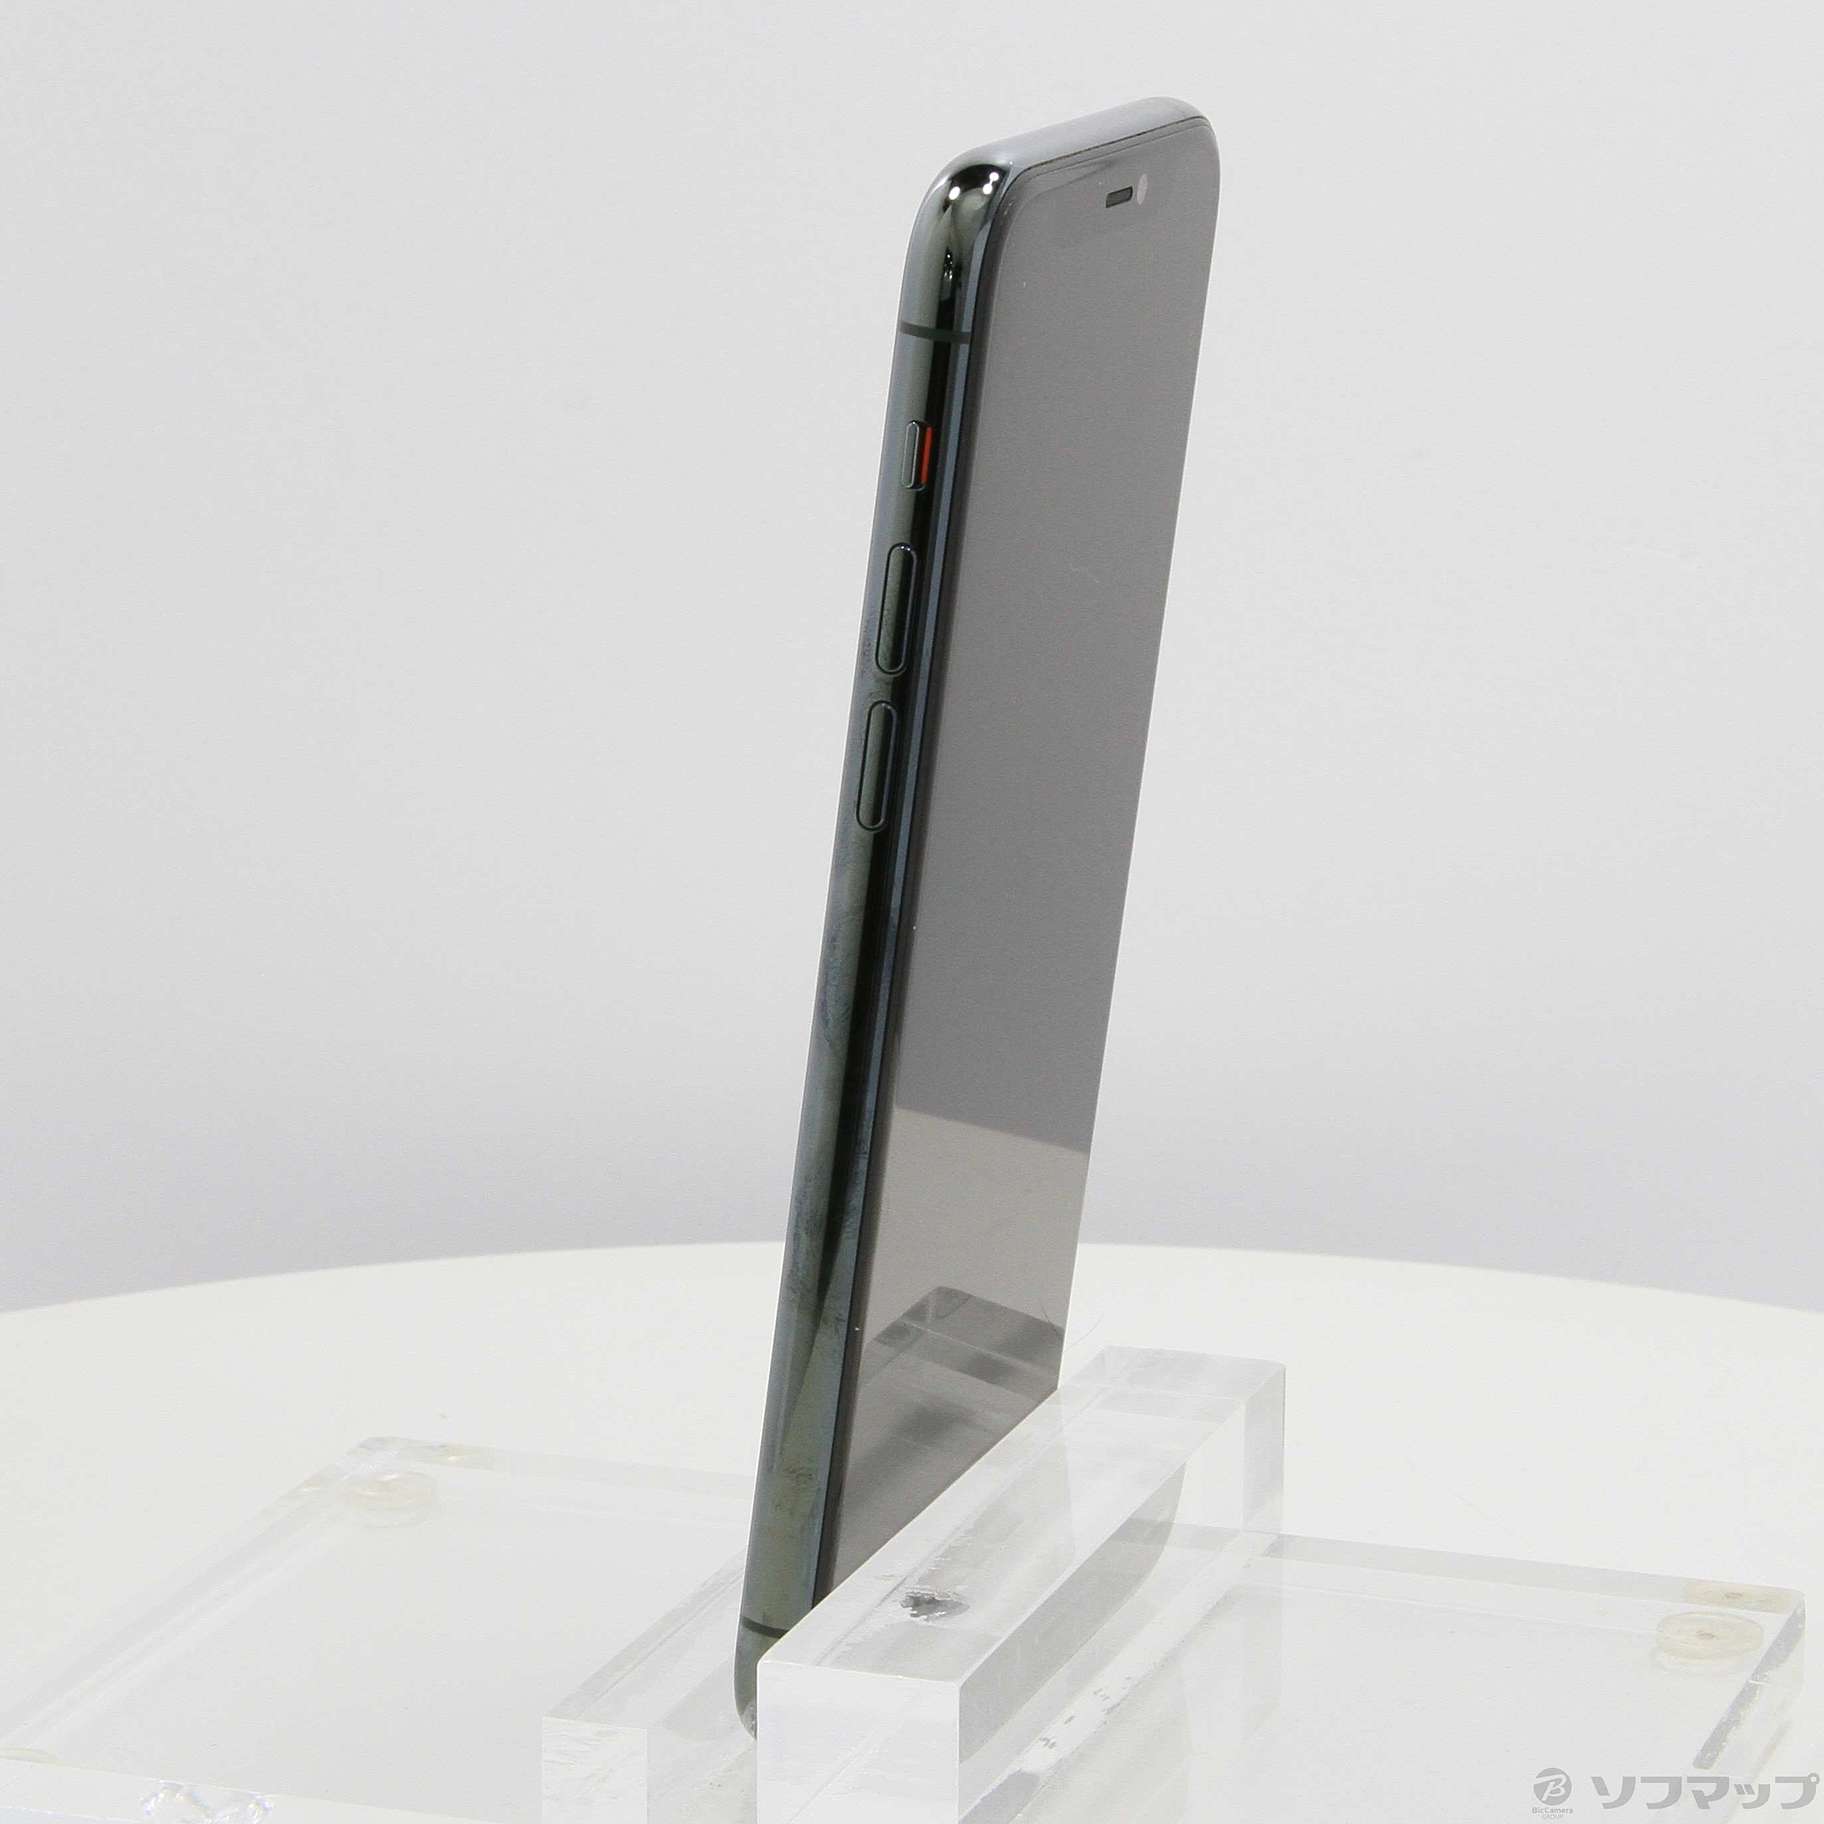 中古】iPhone11 Pro 64GB ミッドナイトグリーン MWC62J／A SIMフリー ...